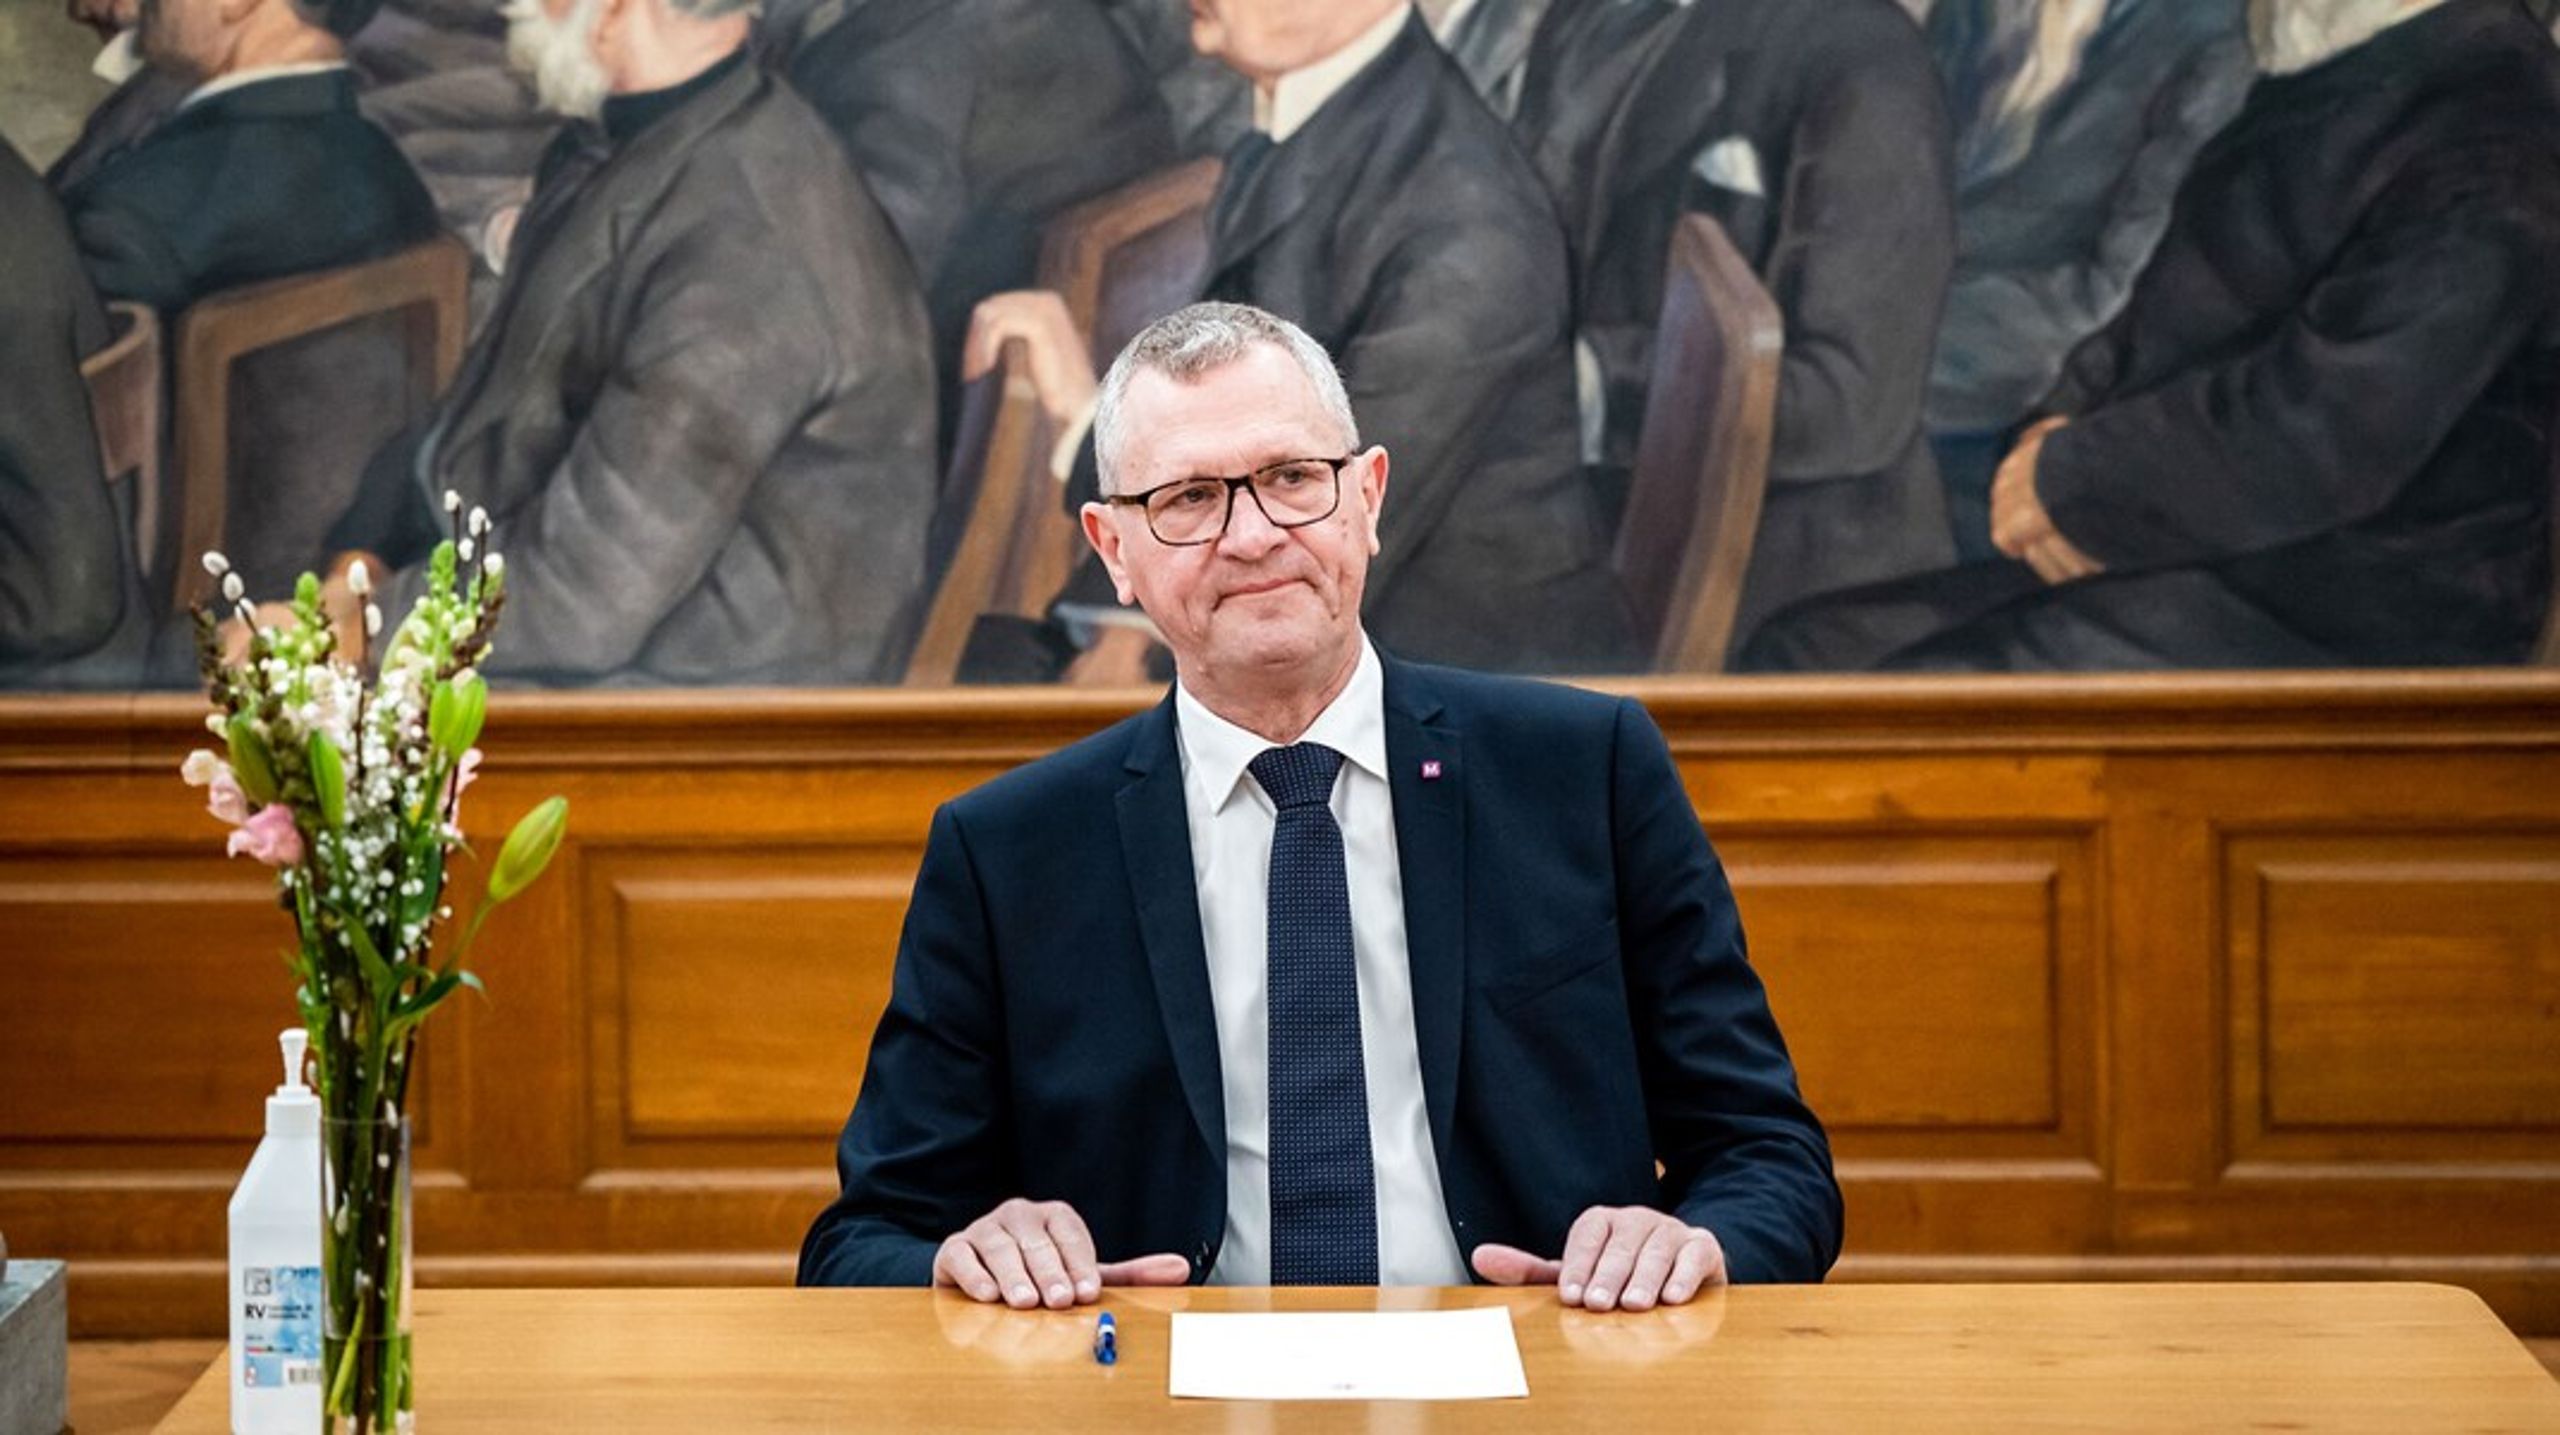 Tidligere Tønder-borgmester Henrik Frandsen har skiftet Venstre ud med Moderaterne, og er&nbsp;nu endt lige midt på&nbsp;den landspolitiske scene.